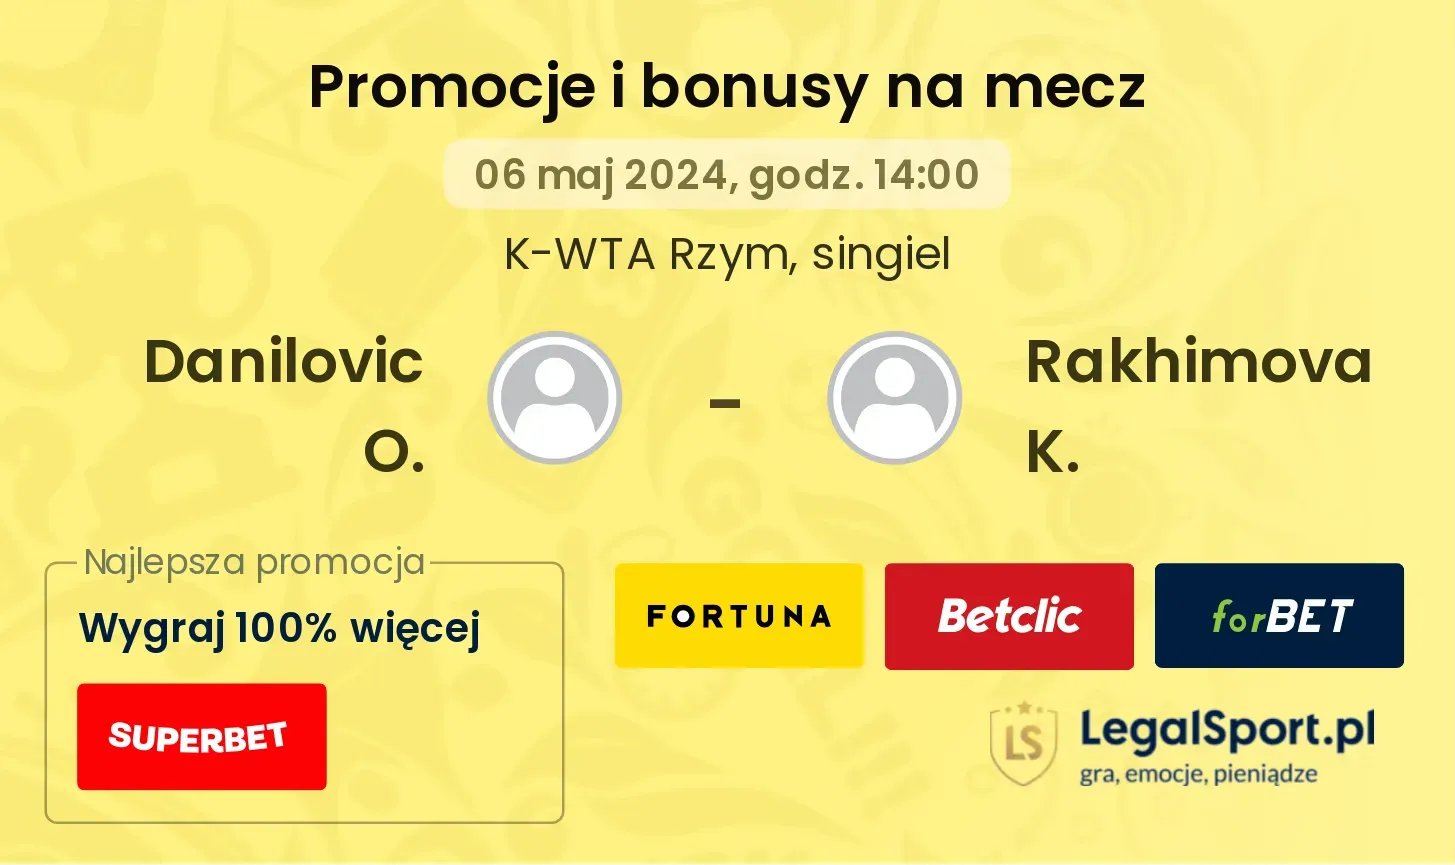 Danilovic O. - Rakhimova K. promocje bonusy na mecz